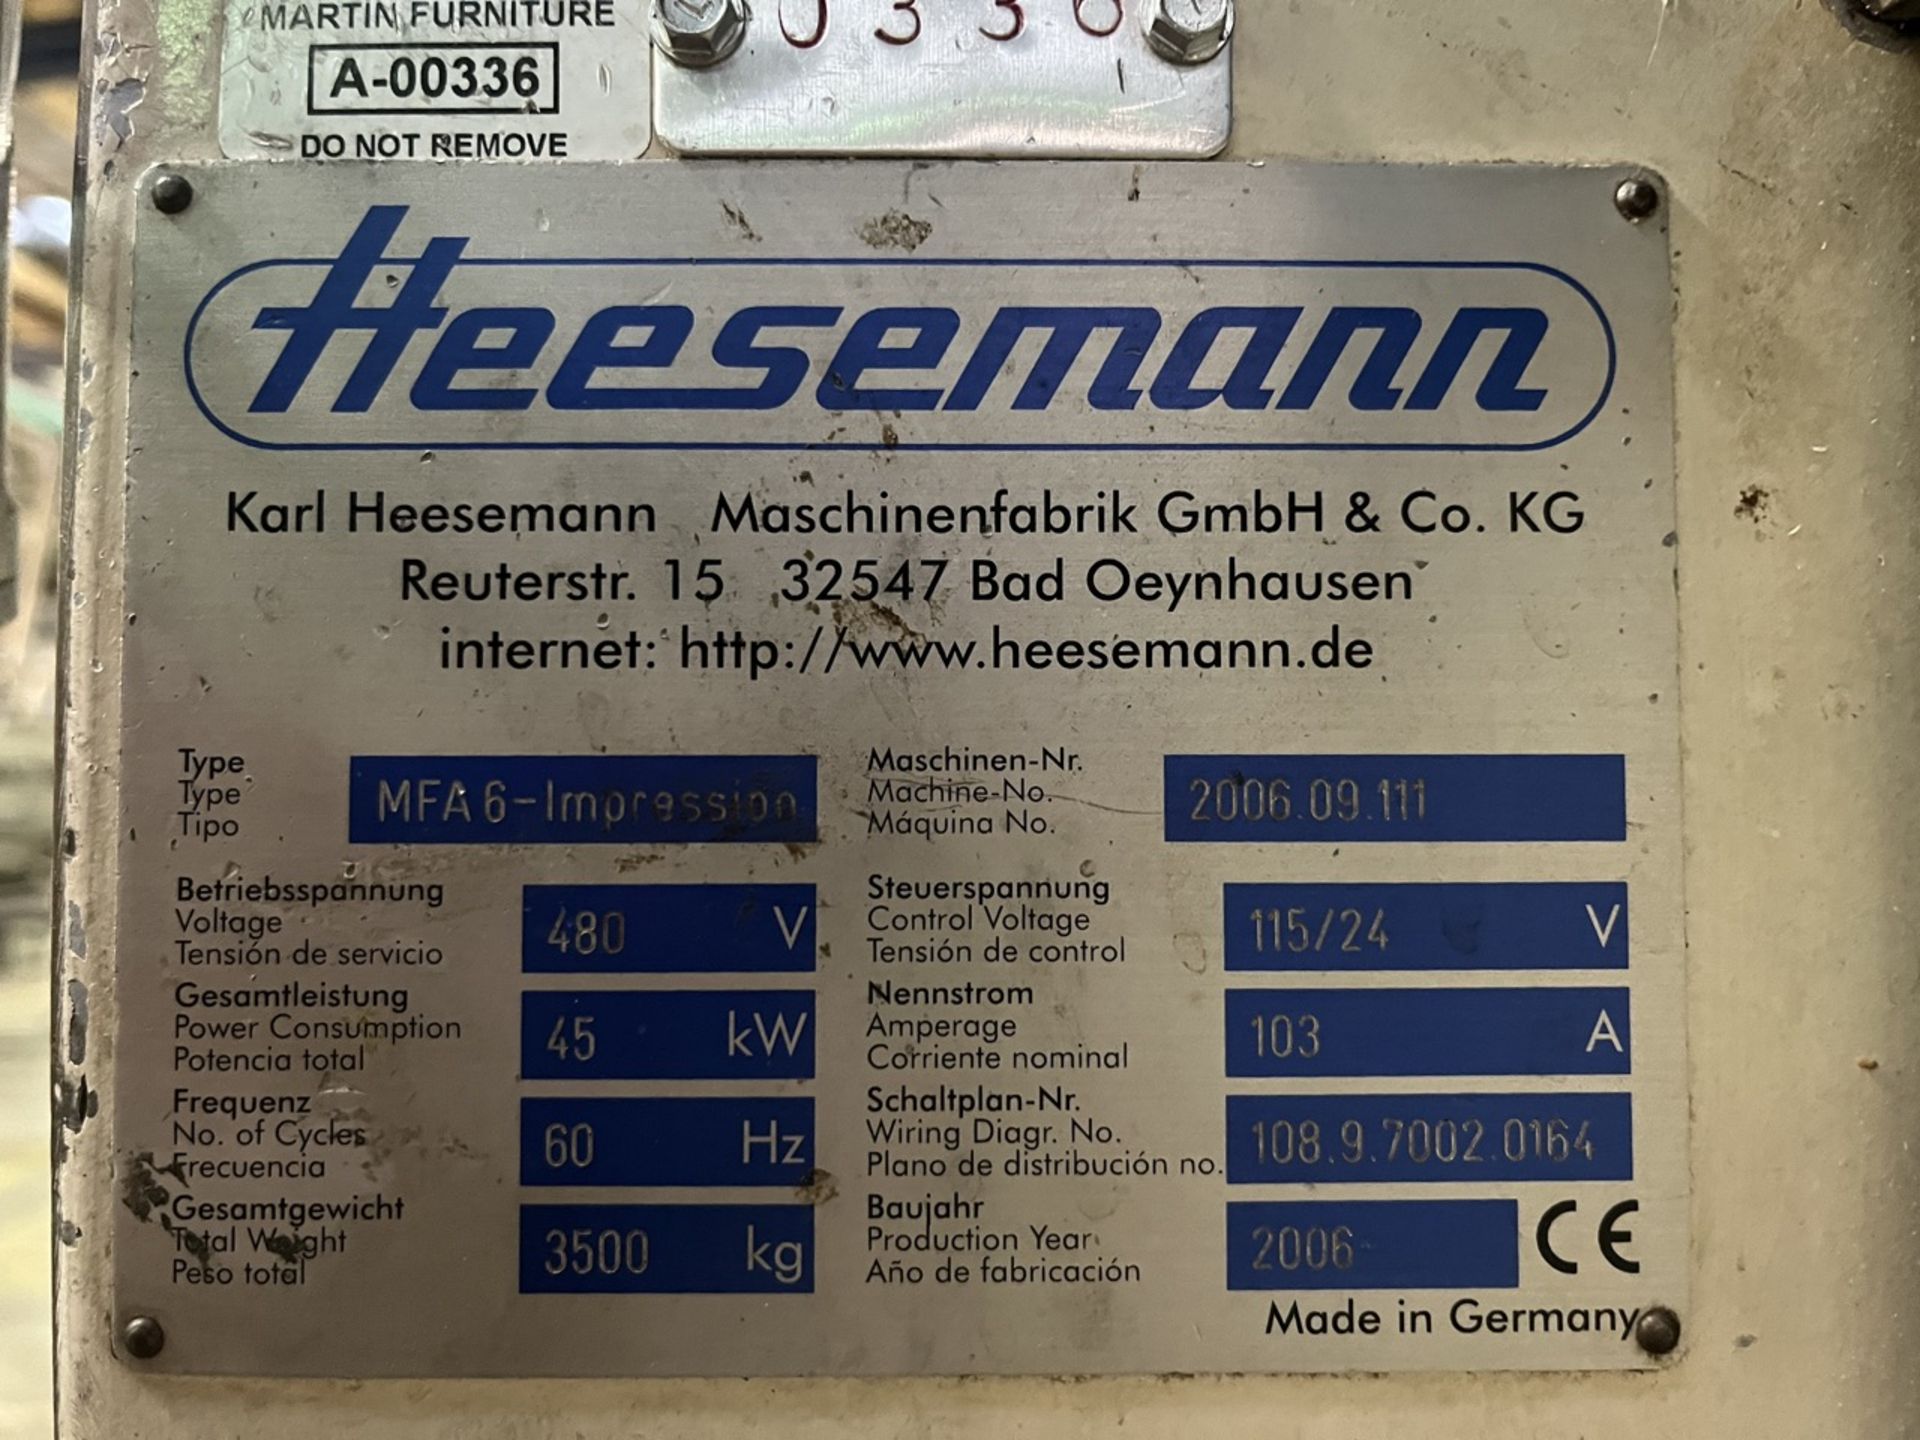 Hessemann Wide belt sander, Model MFA6-Impression, Serial No. 2006.09.111, Year 2006, 480V, Working - Image 17 of 20